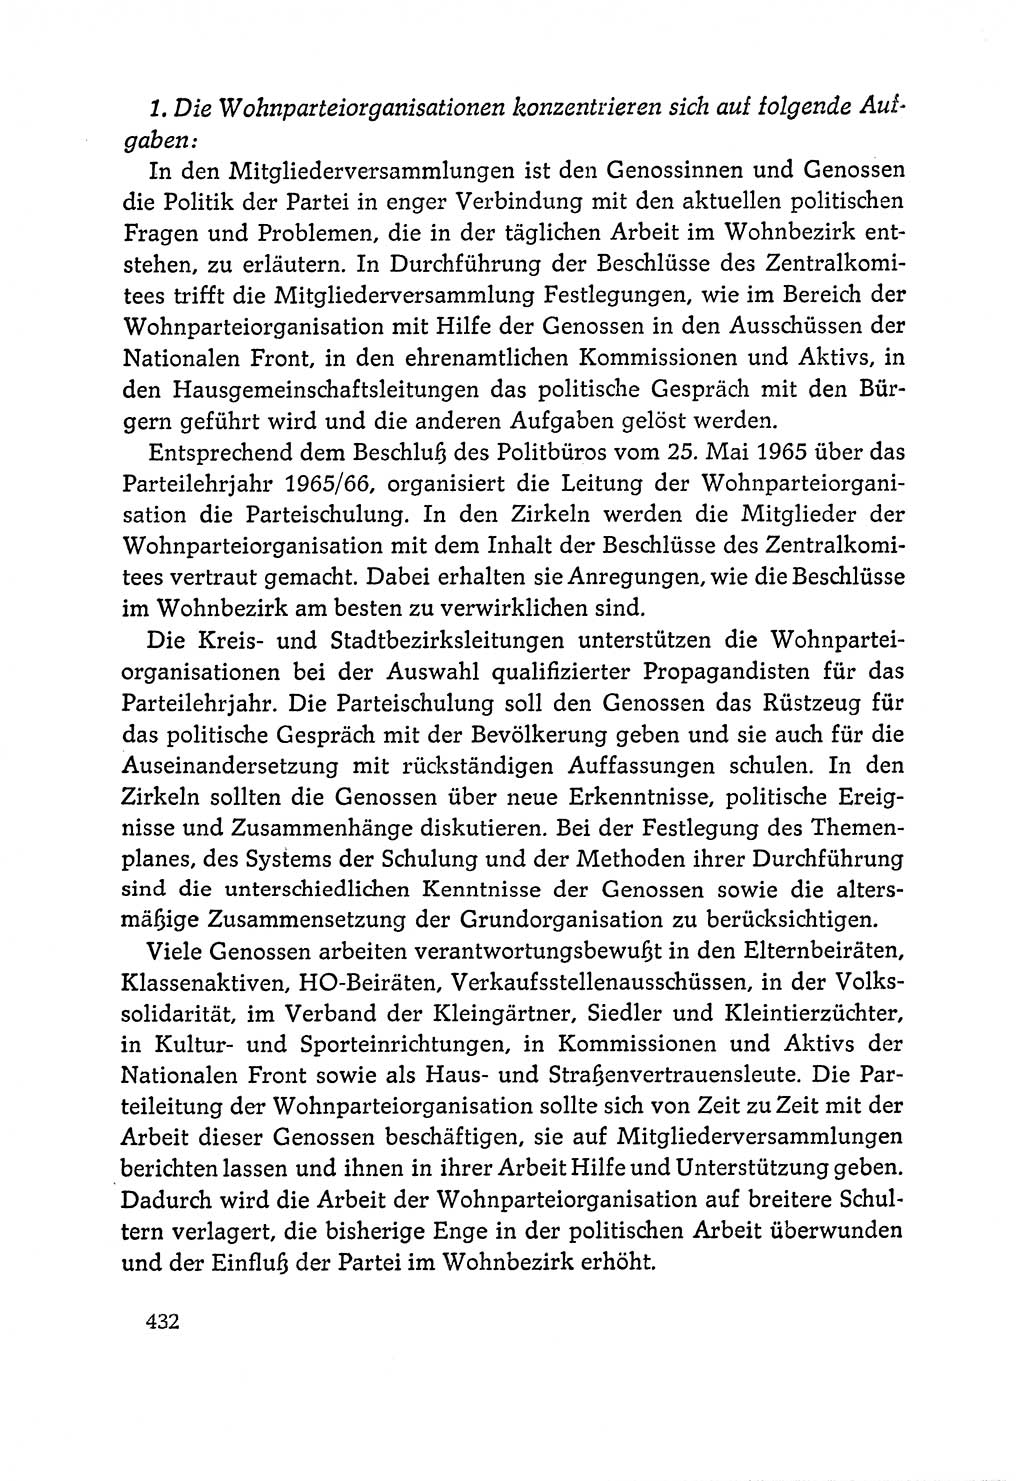 Dokumente der Sozialistischen Einheitspartei Deutschlands (SED) [Deutsche Demokratische Republik (DDR)] 1964-1965, Seite 432 (Dok. SED DDR 1964-1965, S. 432)